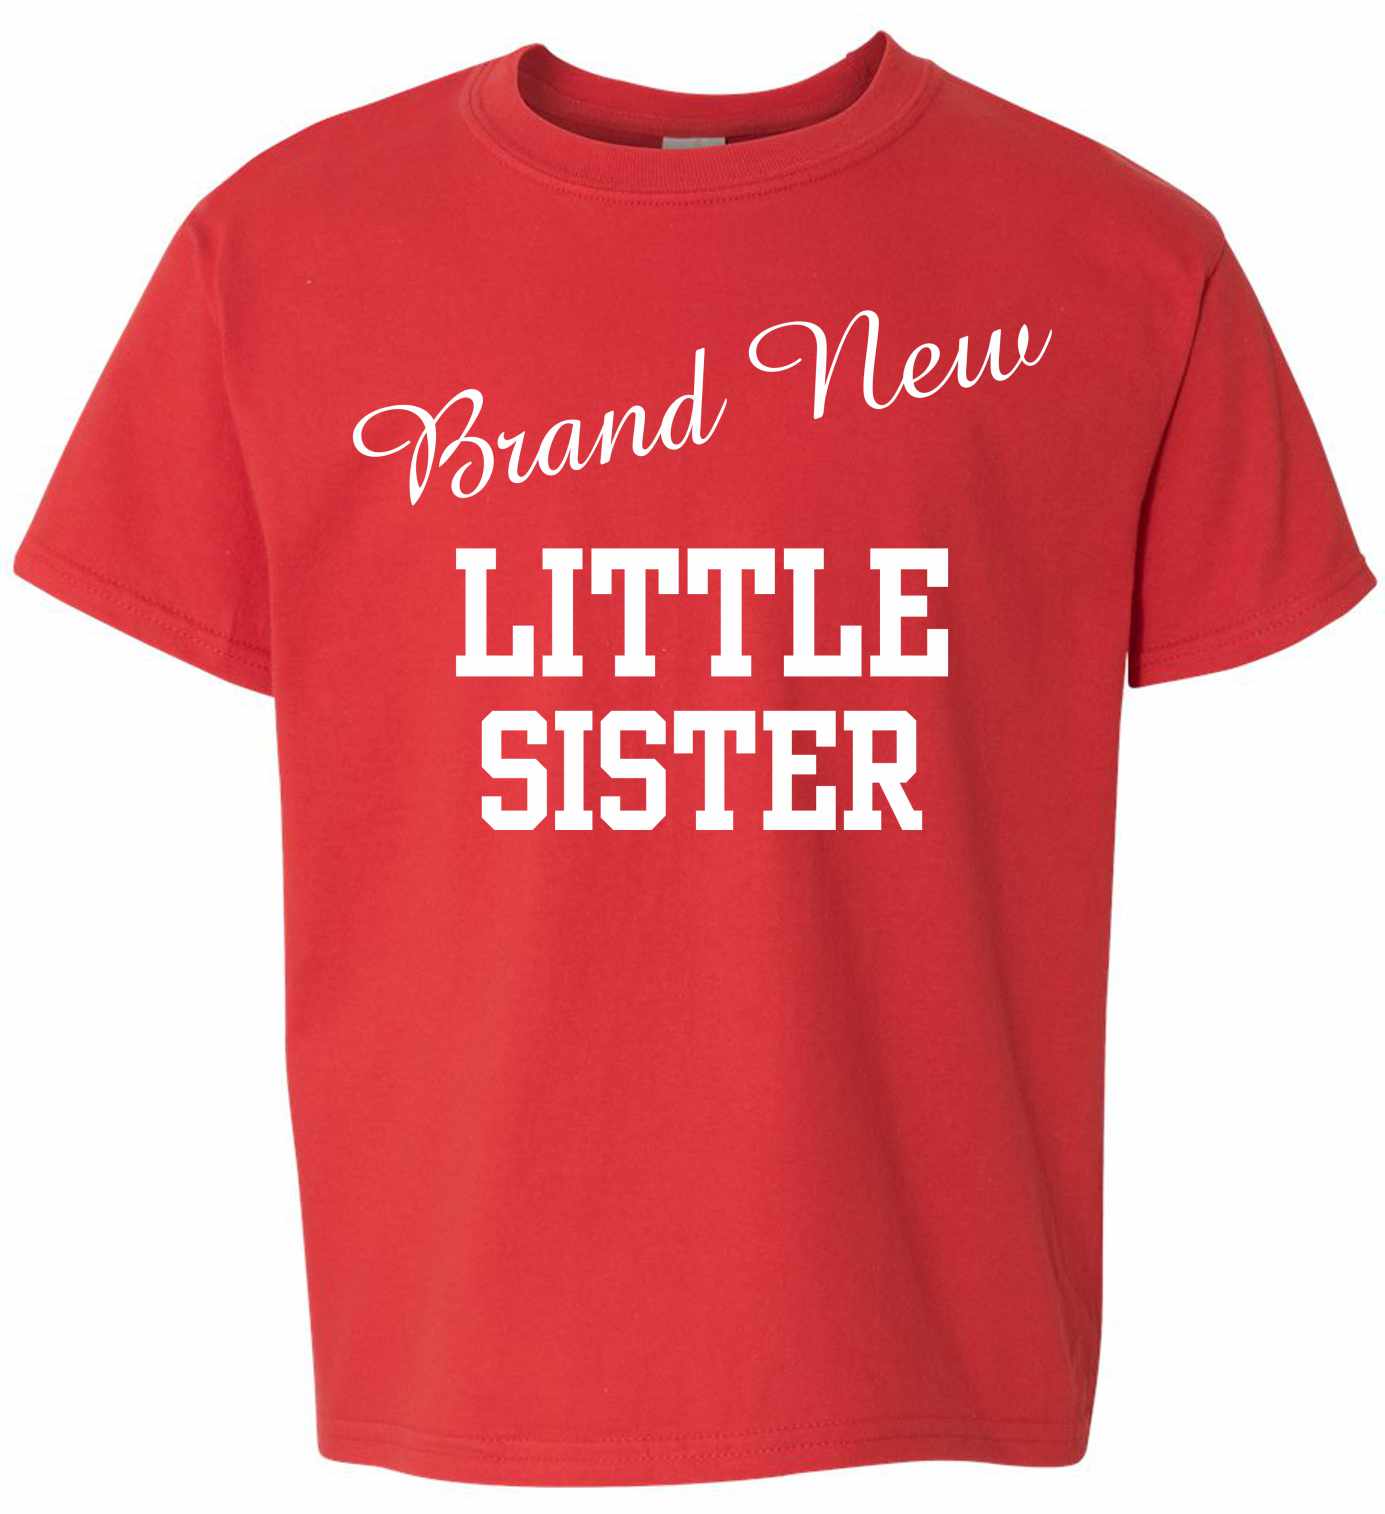 Brand New Little Sister on Kids T-Shirt